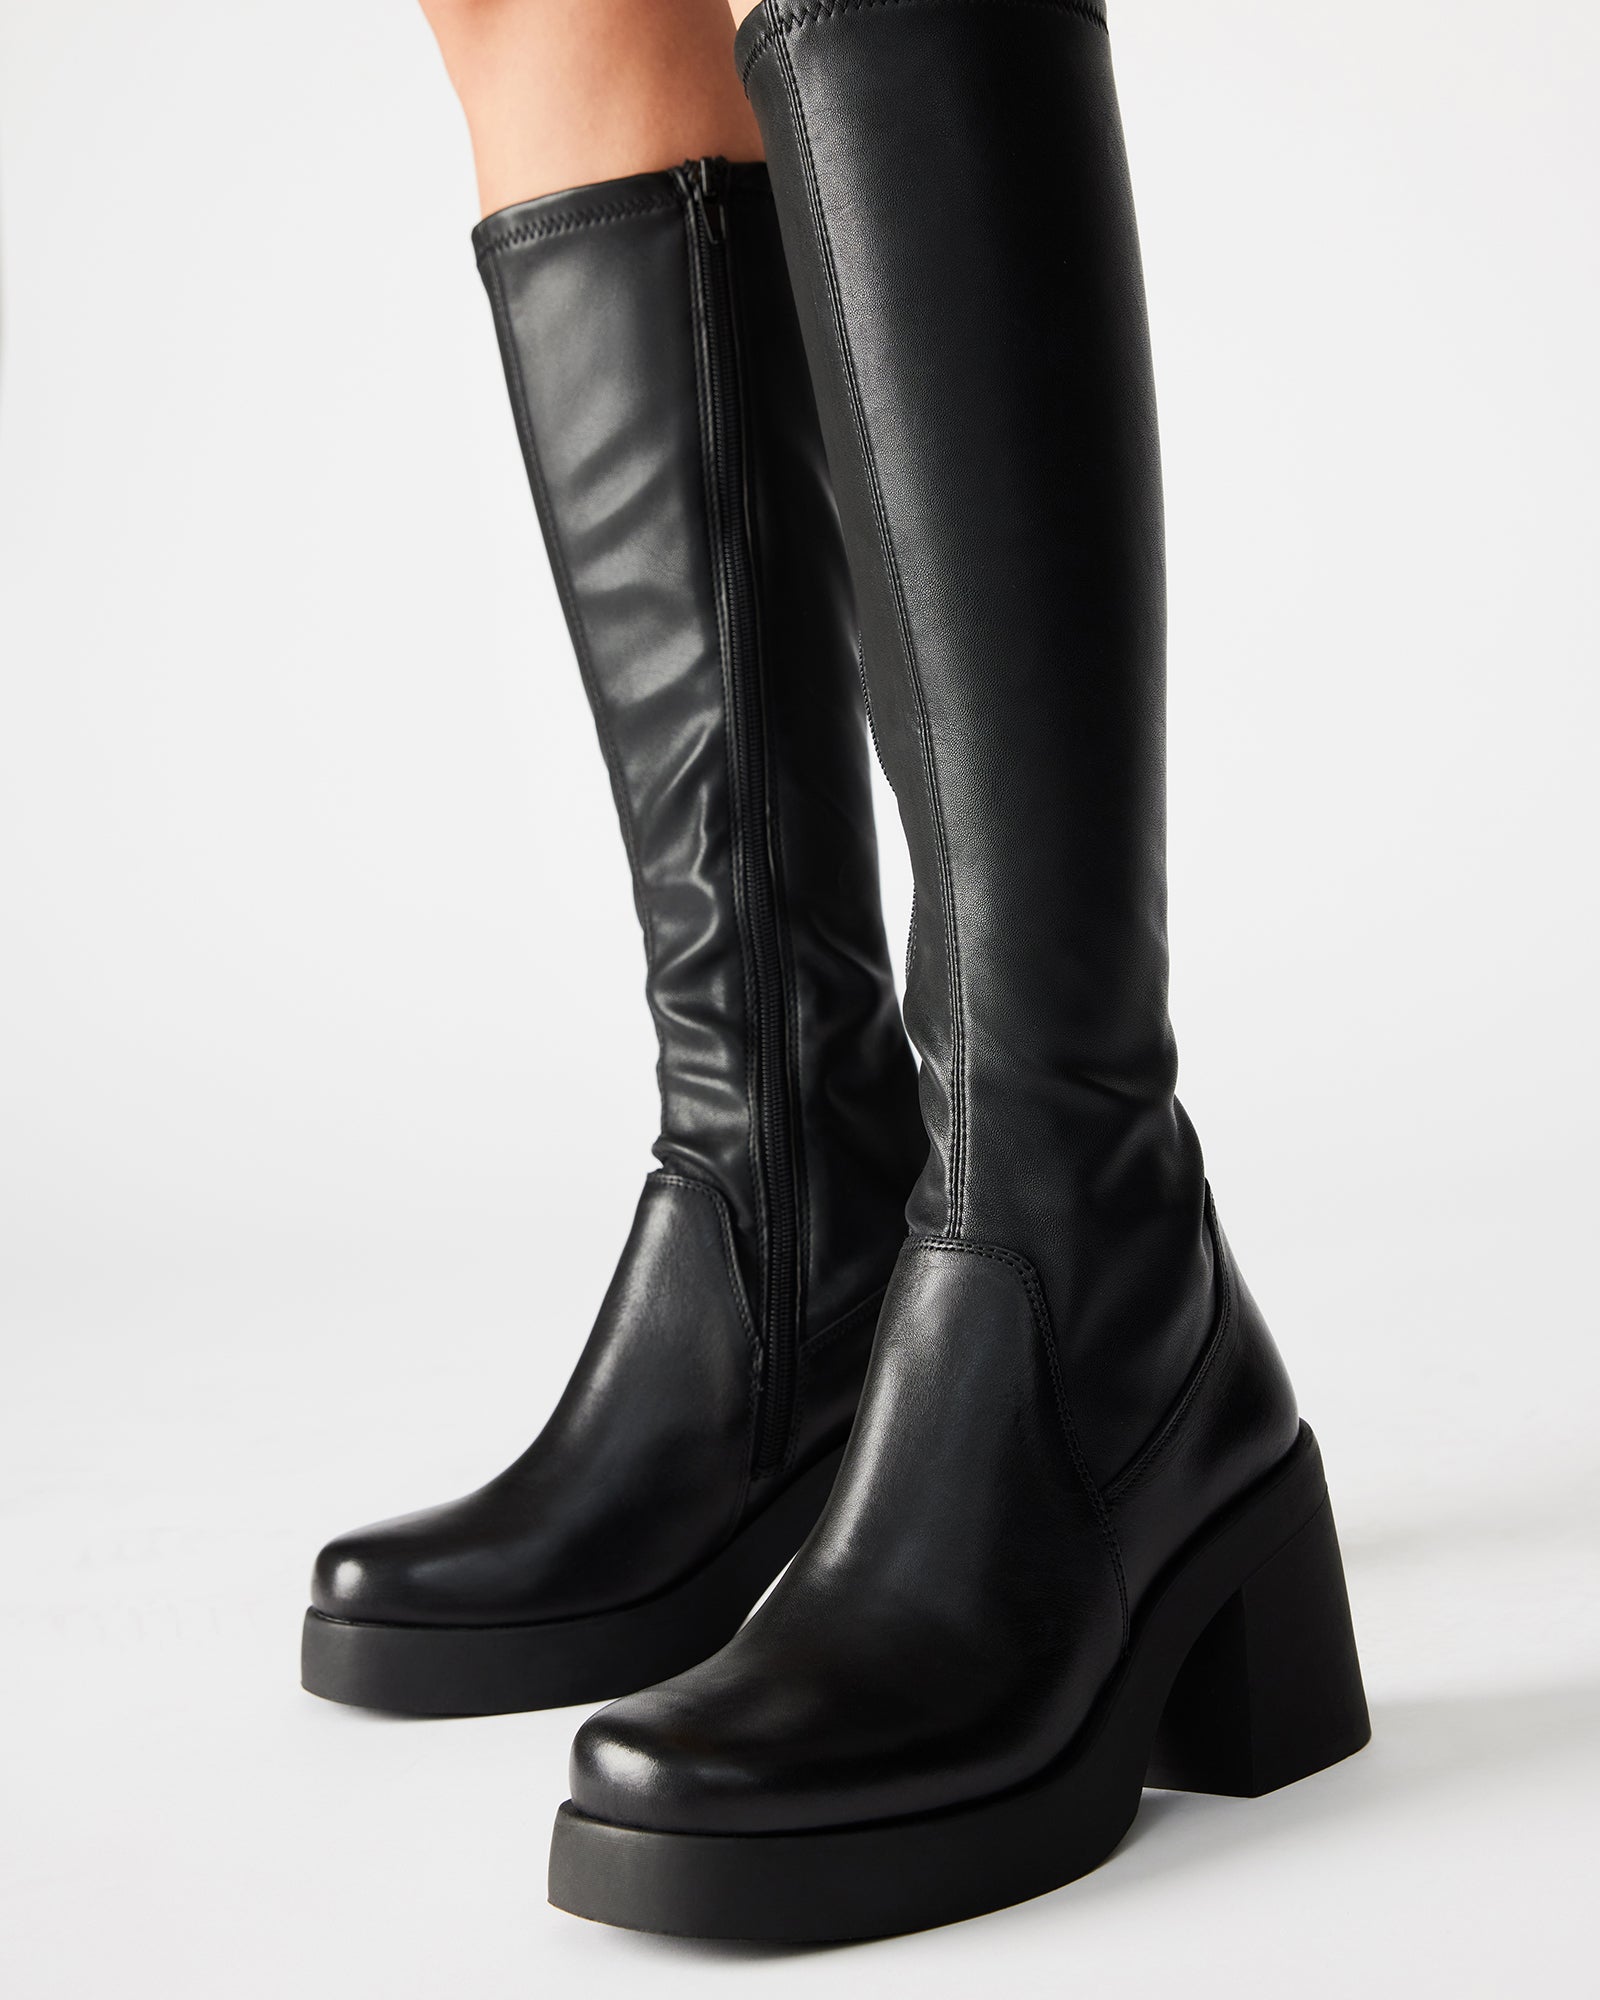 BERKLEIGH Black Knee High Boot | Women's Platform Boots – Steve Madden